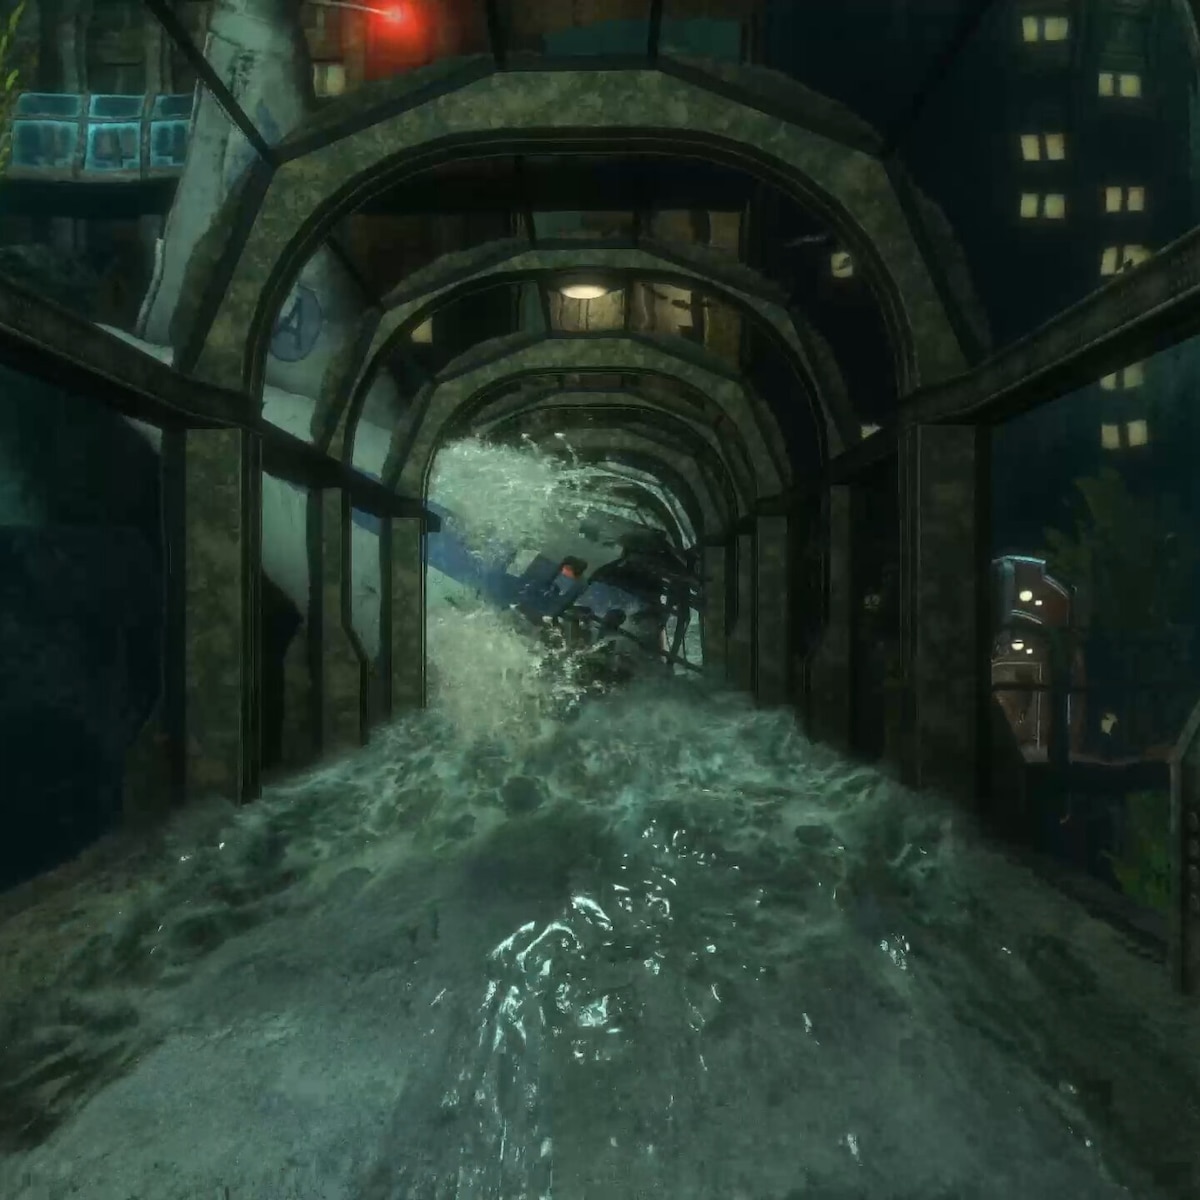 Bioshock Remastered Flooded Walkway looped 21:9 3440x1440 60fps